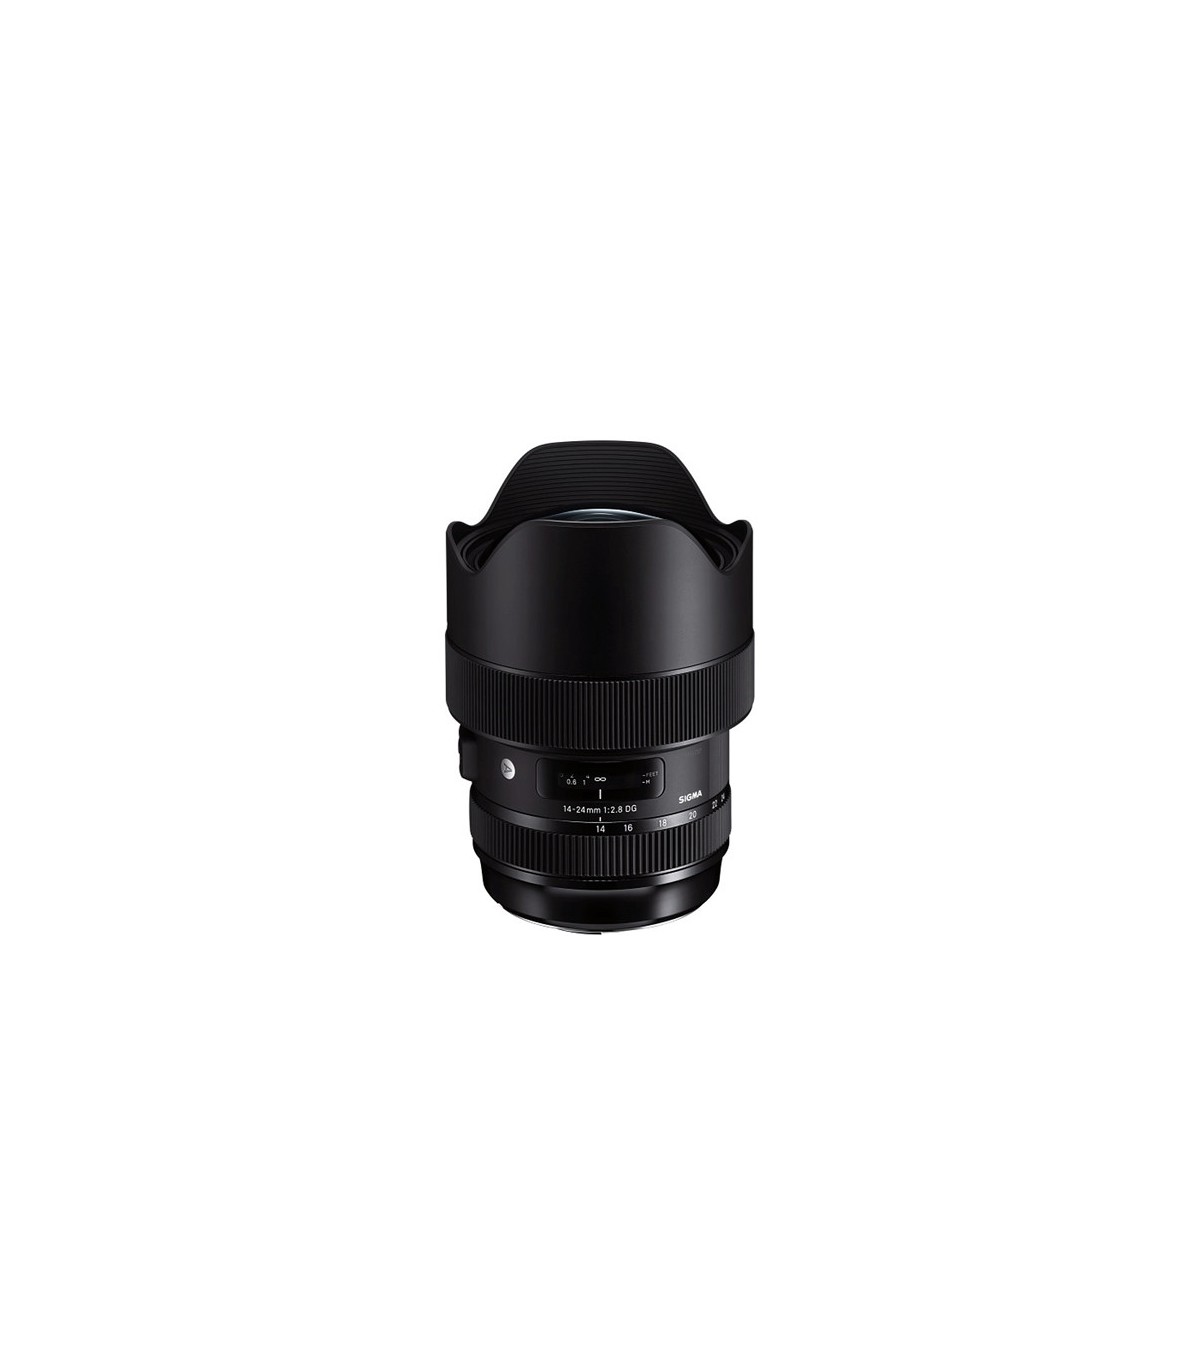 感謝価格 Sigma 14-24mm F2.8 DG HSM Art Lens for Canon Hard Drive Bundle Items 